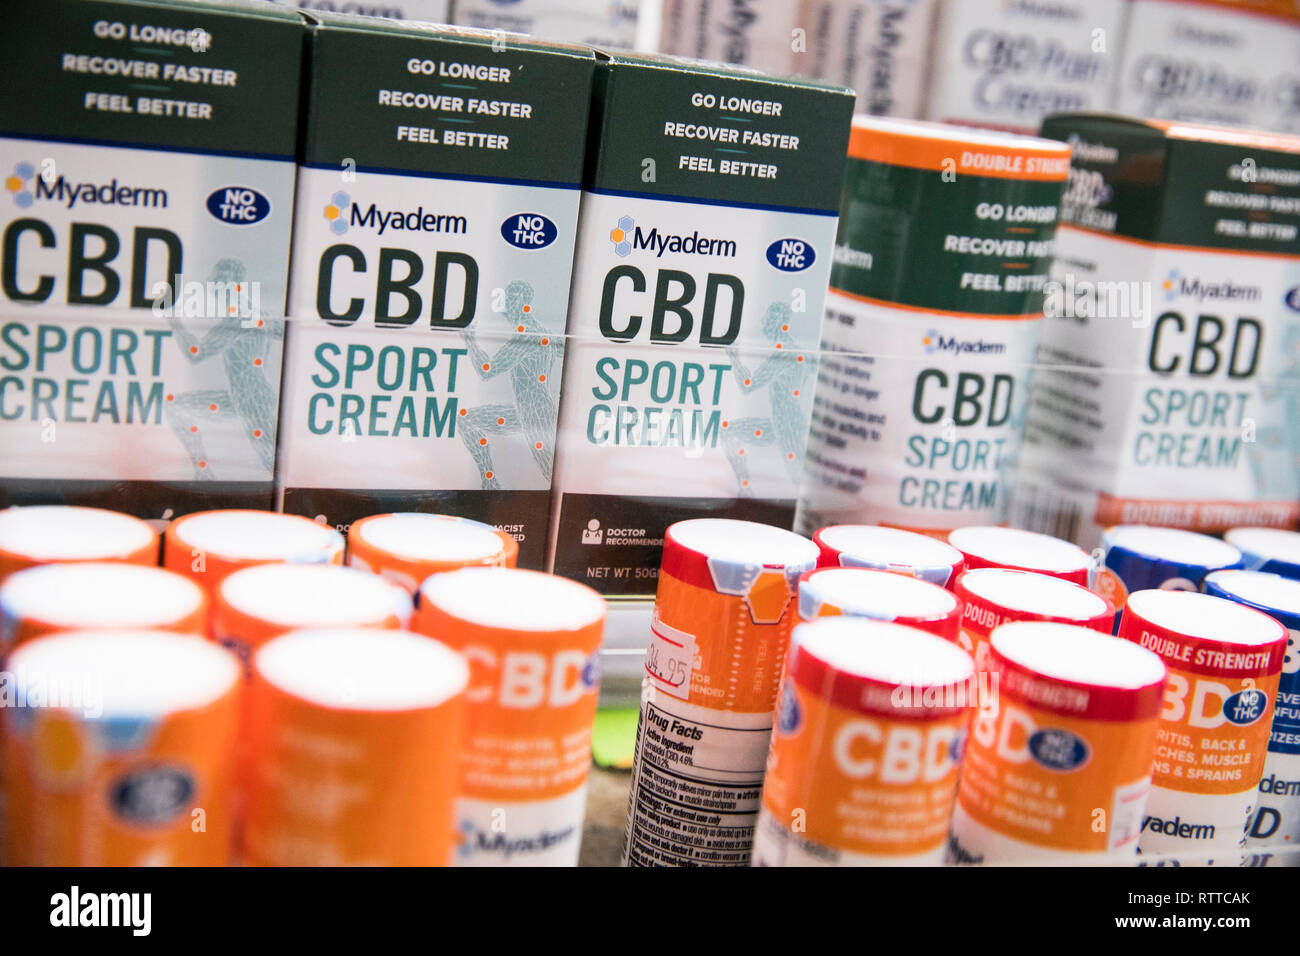 Botellas de Myaderm CDB (cannabidiol) dolor productos de tratamiento crema fotografiado en una farmacia. Foto de stock